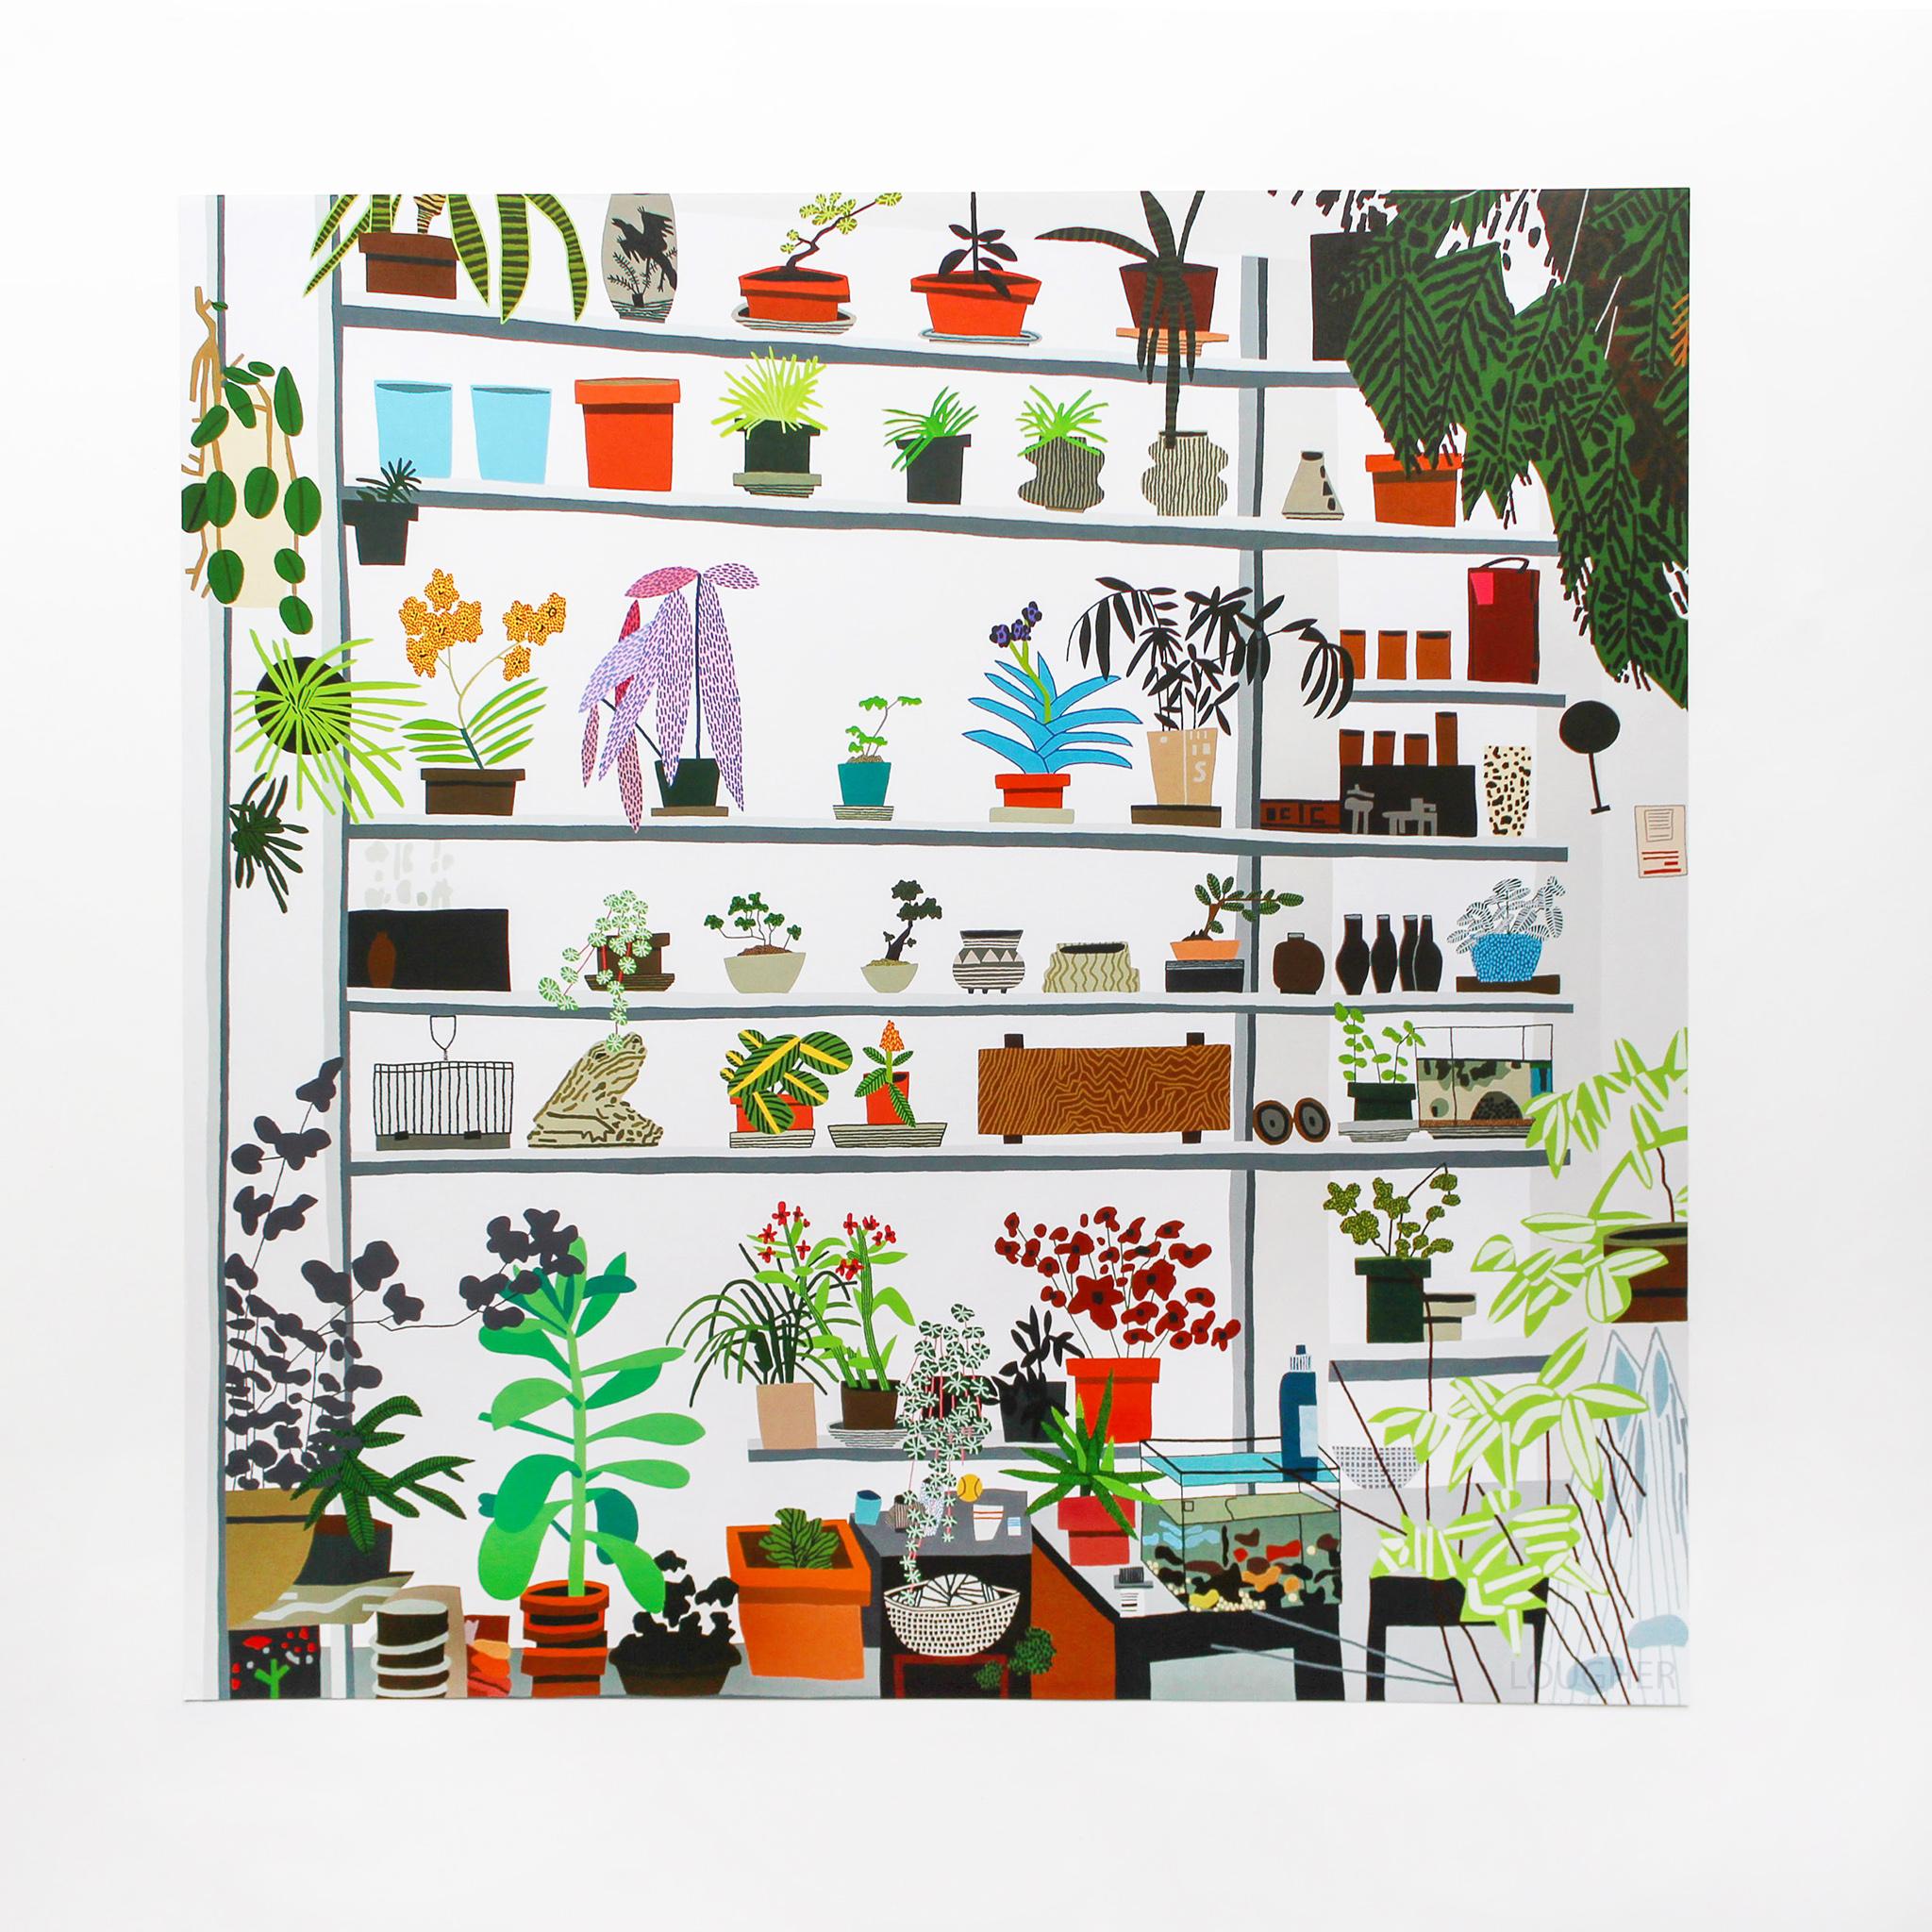 Jonas Wood Still-Life Print - Large Shelf Still Life (Voorlinden Exhibition poster)